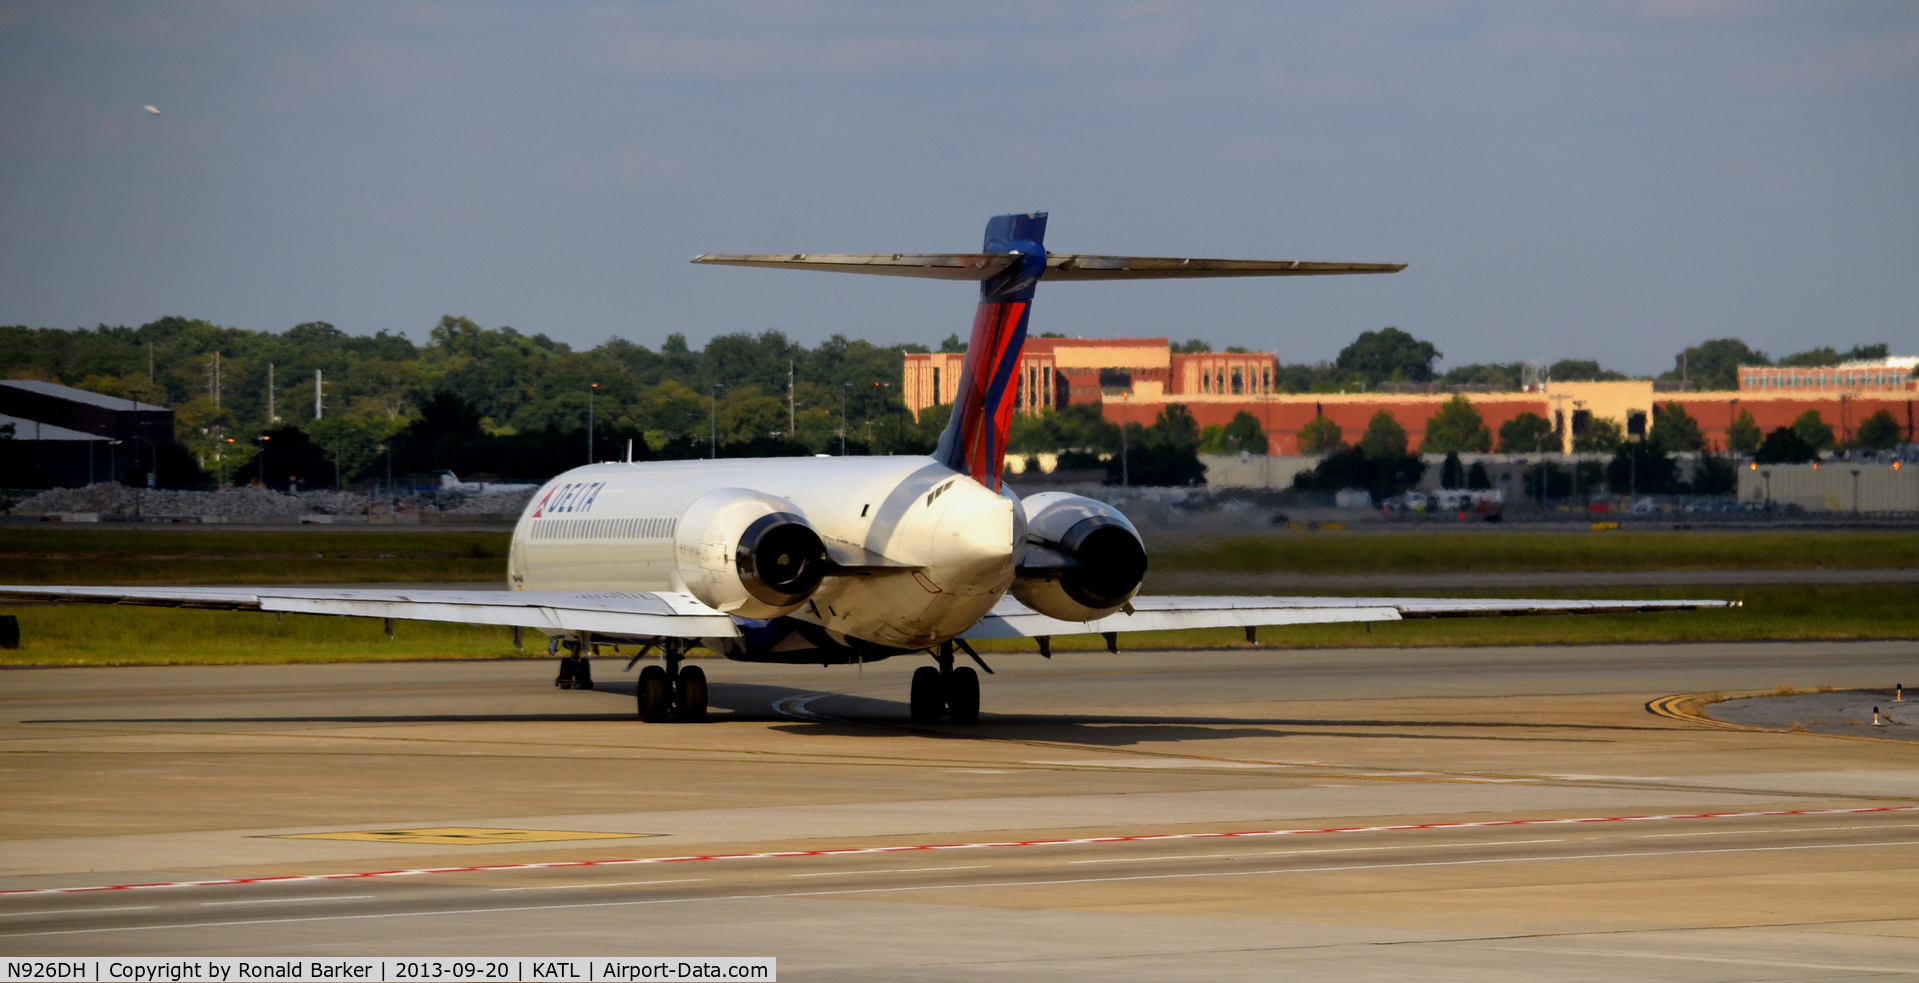 N926DH, 1998 McDonnell Douglas MD-90-30 C/N 53588, Taxi Atlanta